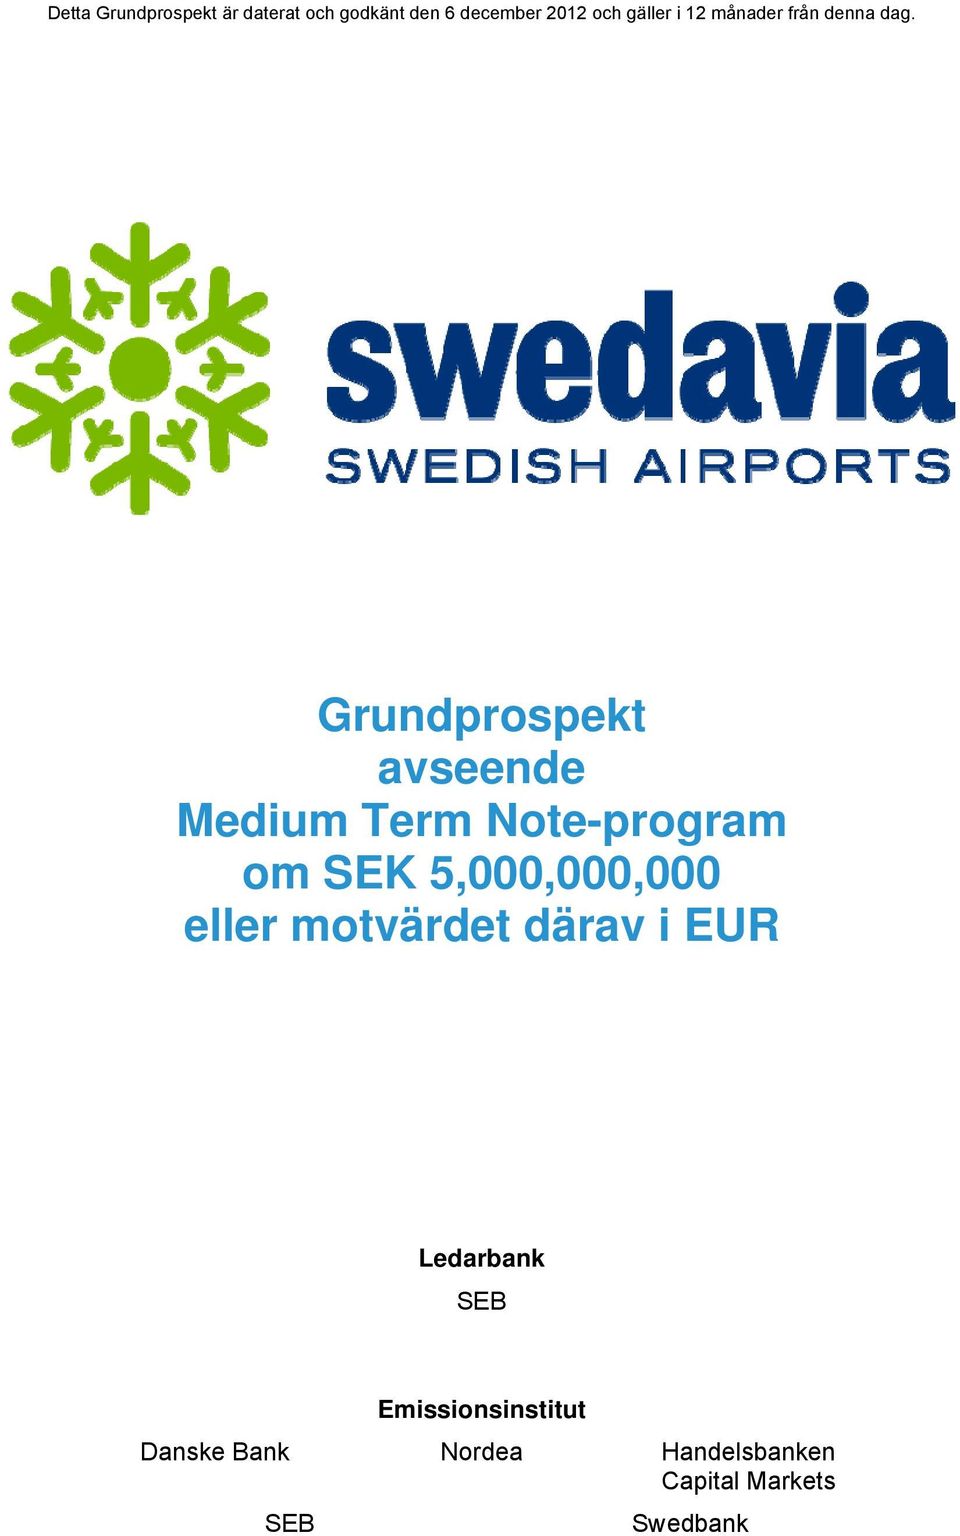 Grundprospekt avseende Medium Term Note-program om SEK 5,000,000,000